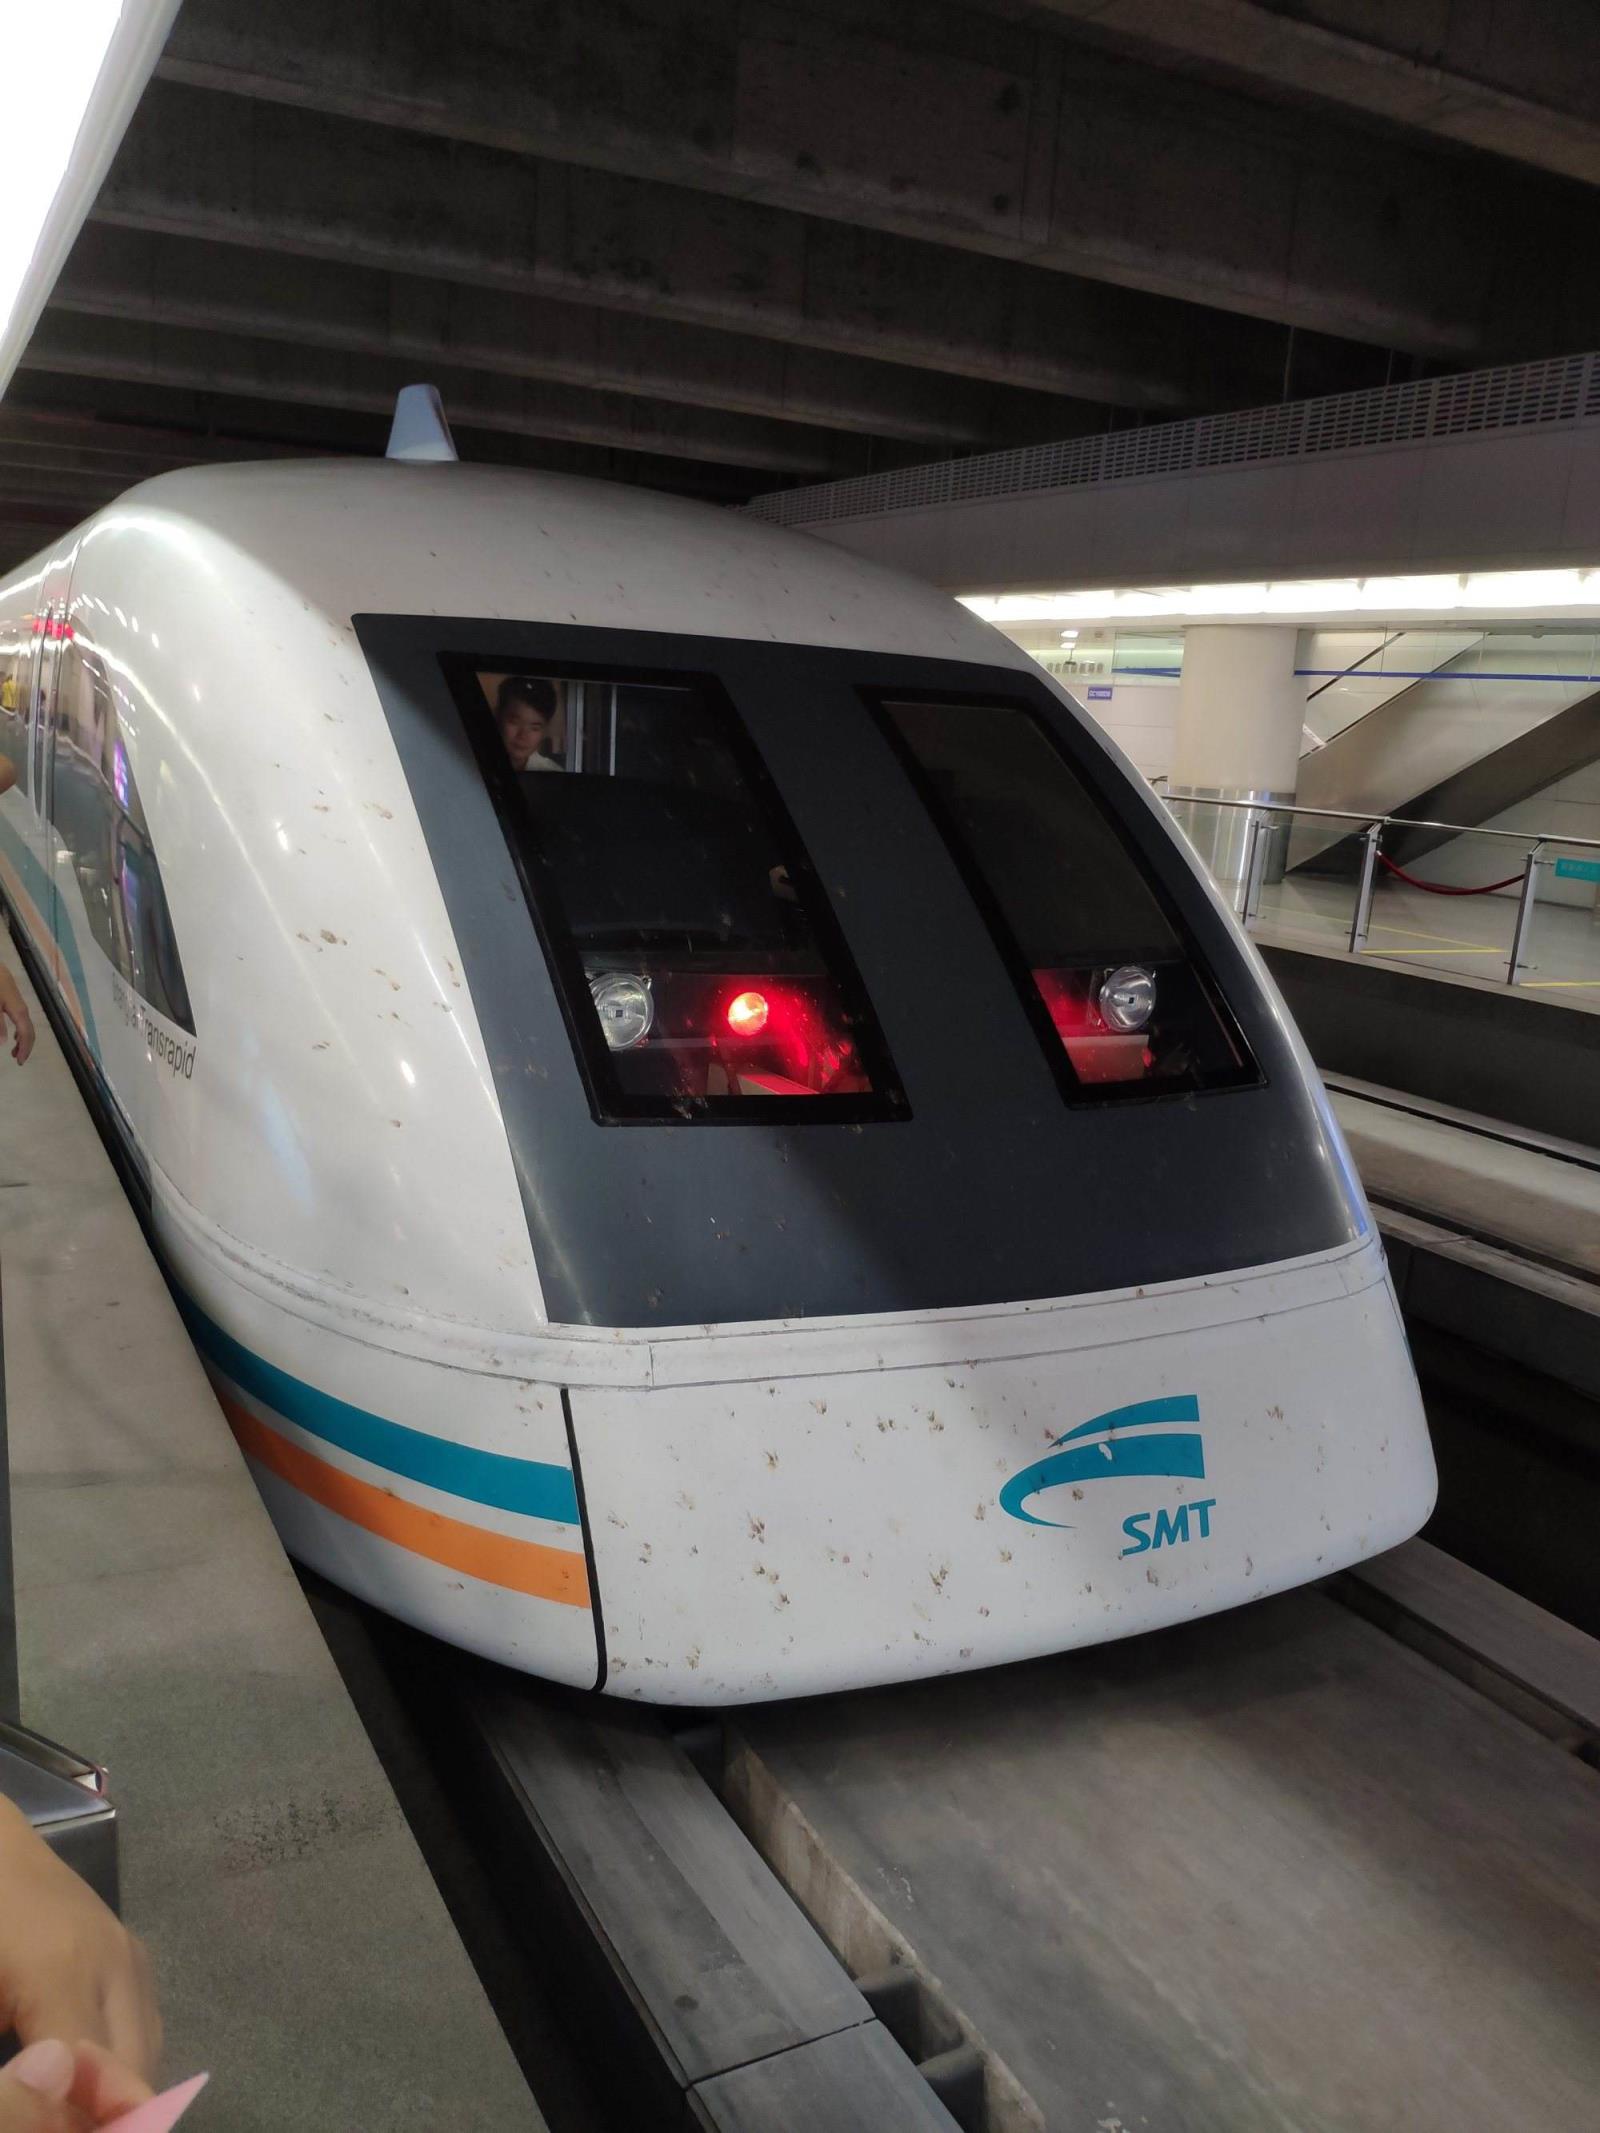 上海磁悬浮列车速度  上海磁悬浮列车速度最高时速450公里 上海磁悬浮列车速度  上海磁悬浮列车速度最高时速450公里 生活